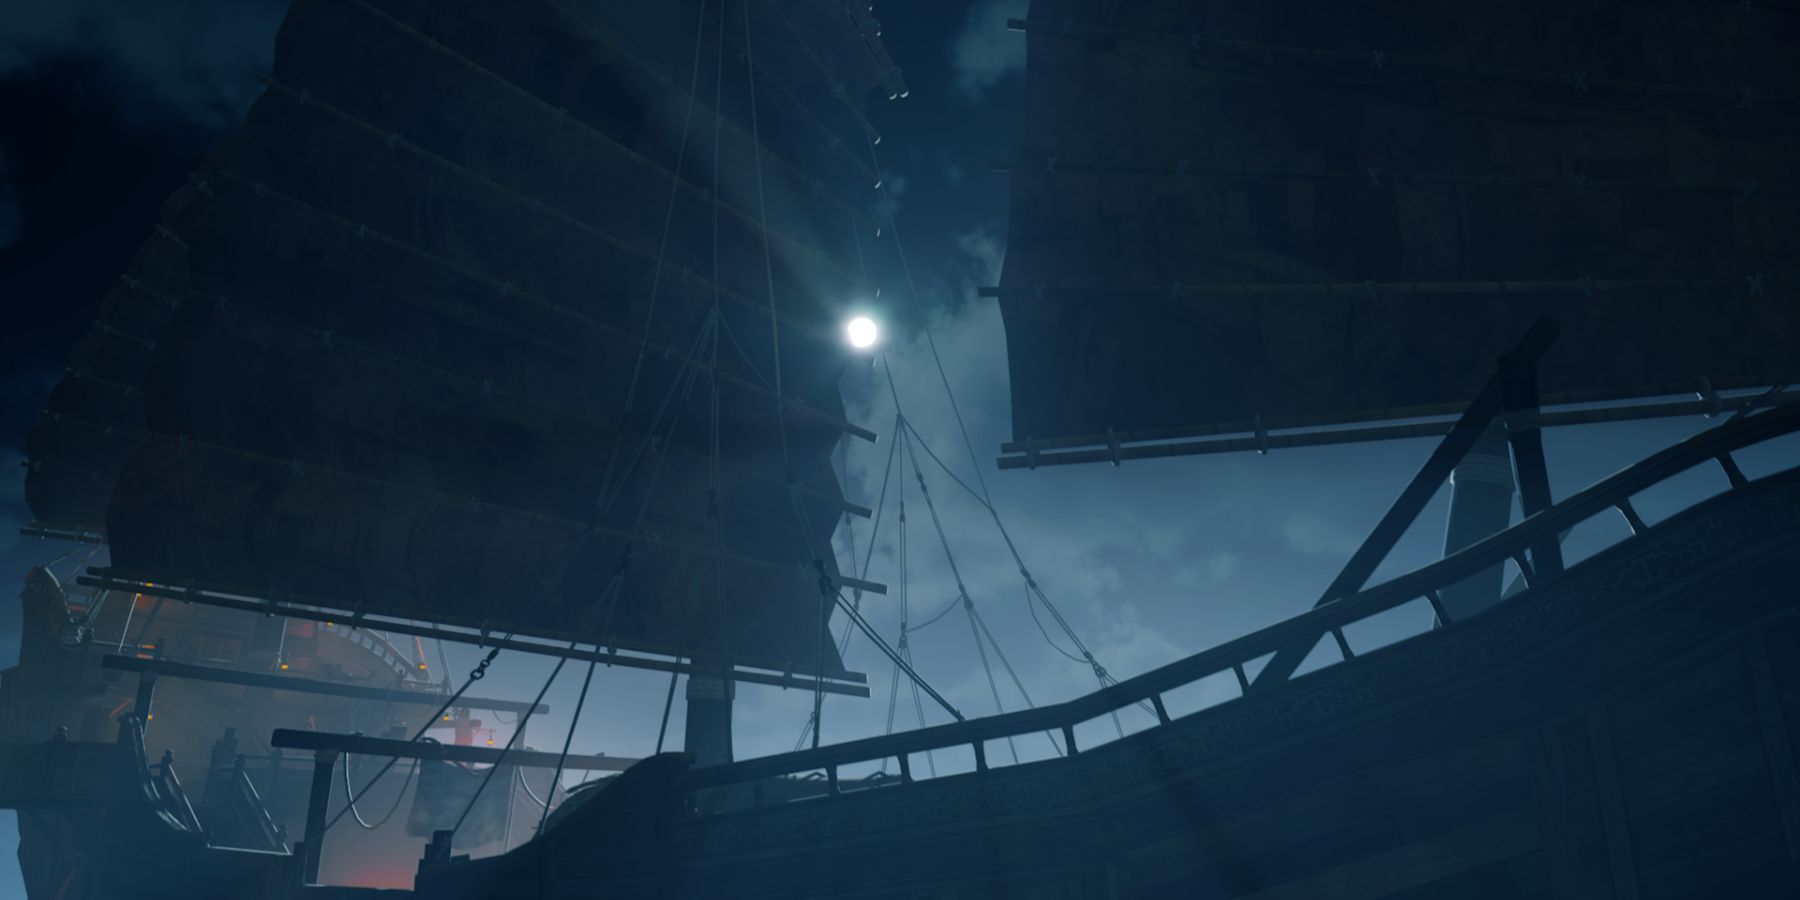 La nave de La Regina dei Pirati alla luce della luna